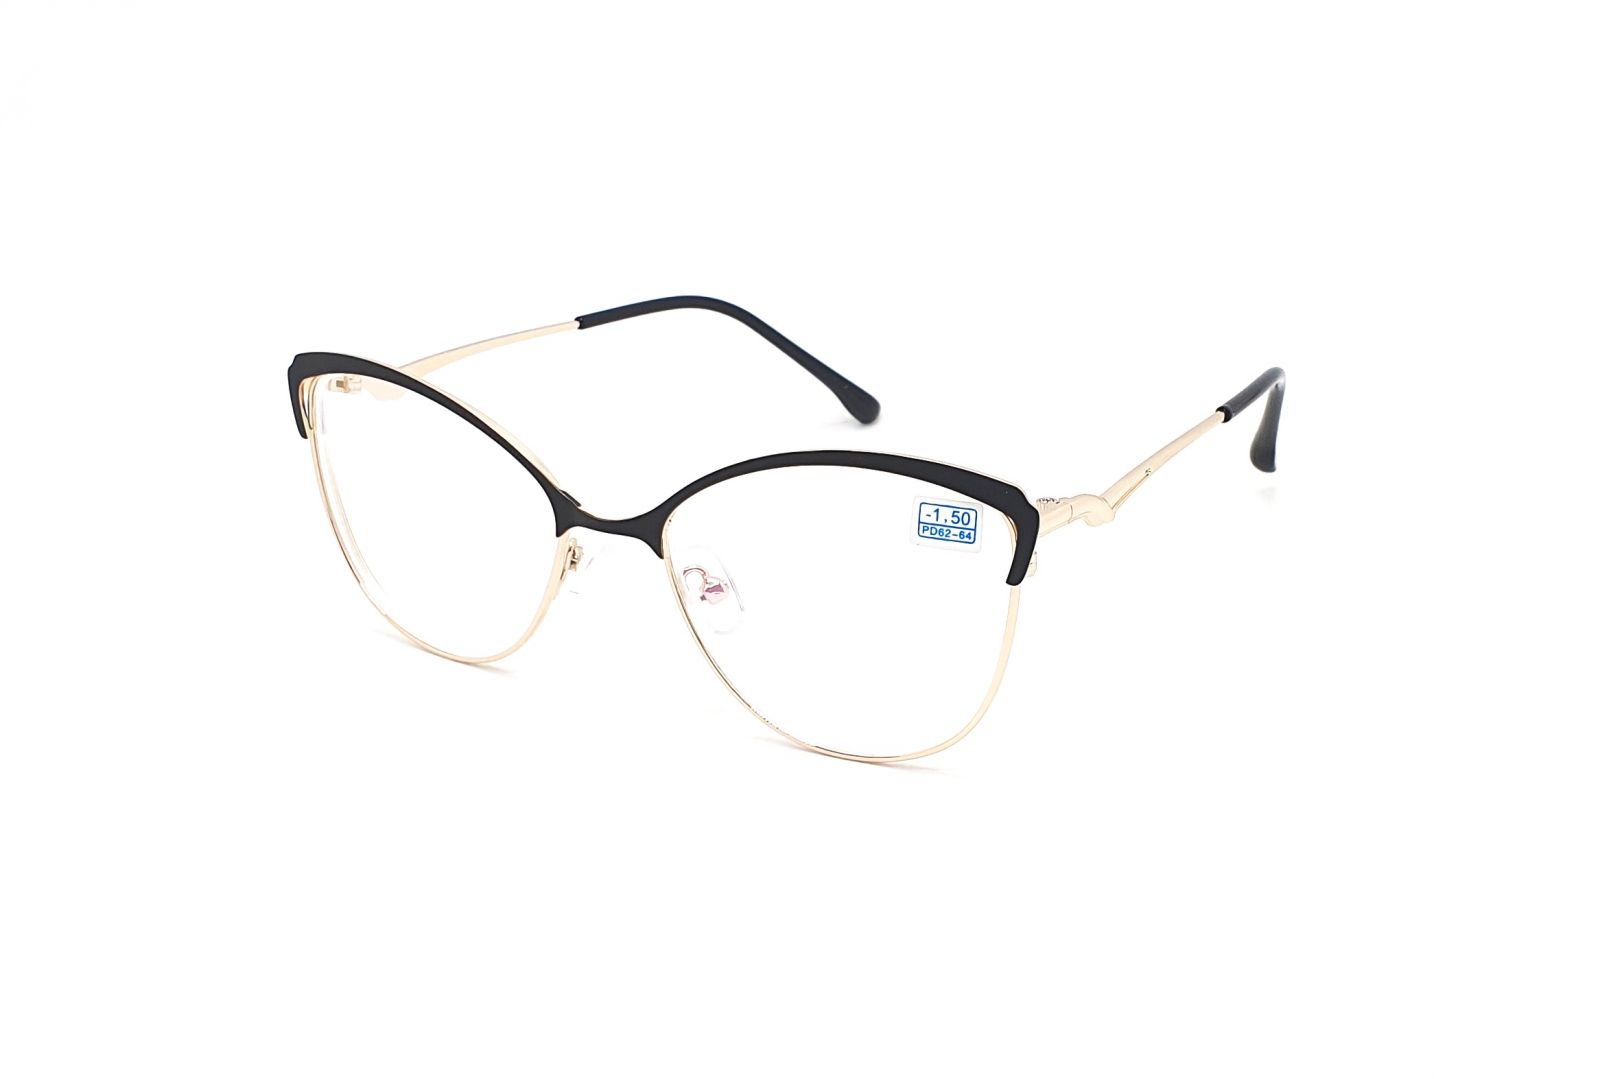 Dioptrické brýle 850 / -3,00 black/gold s antireflexní vrstvou